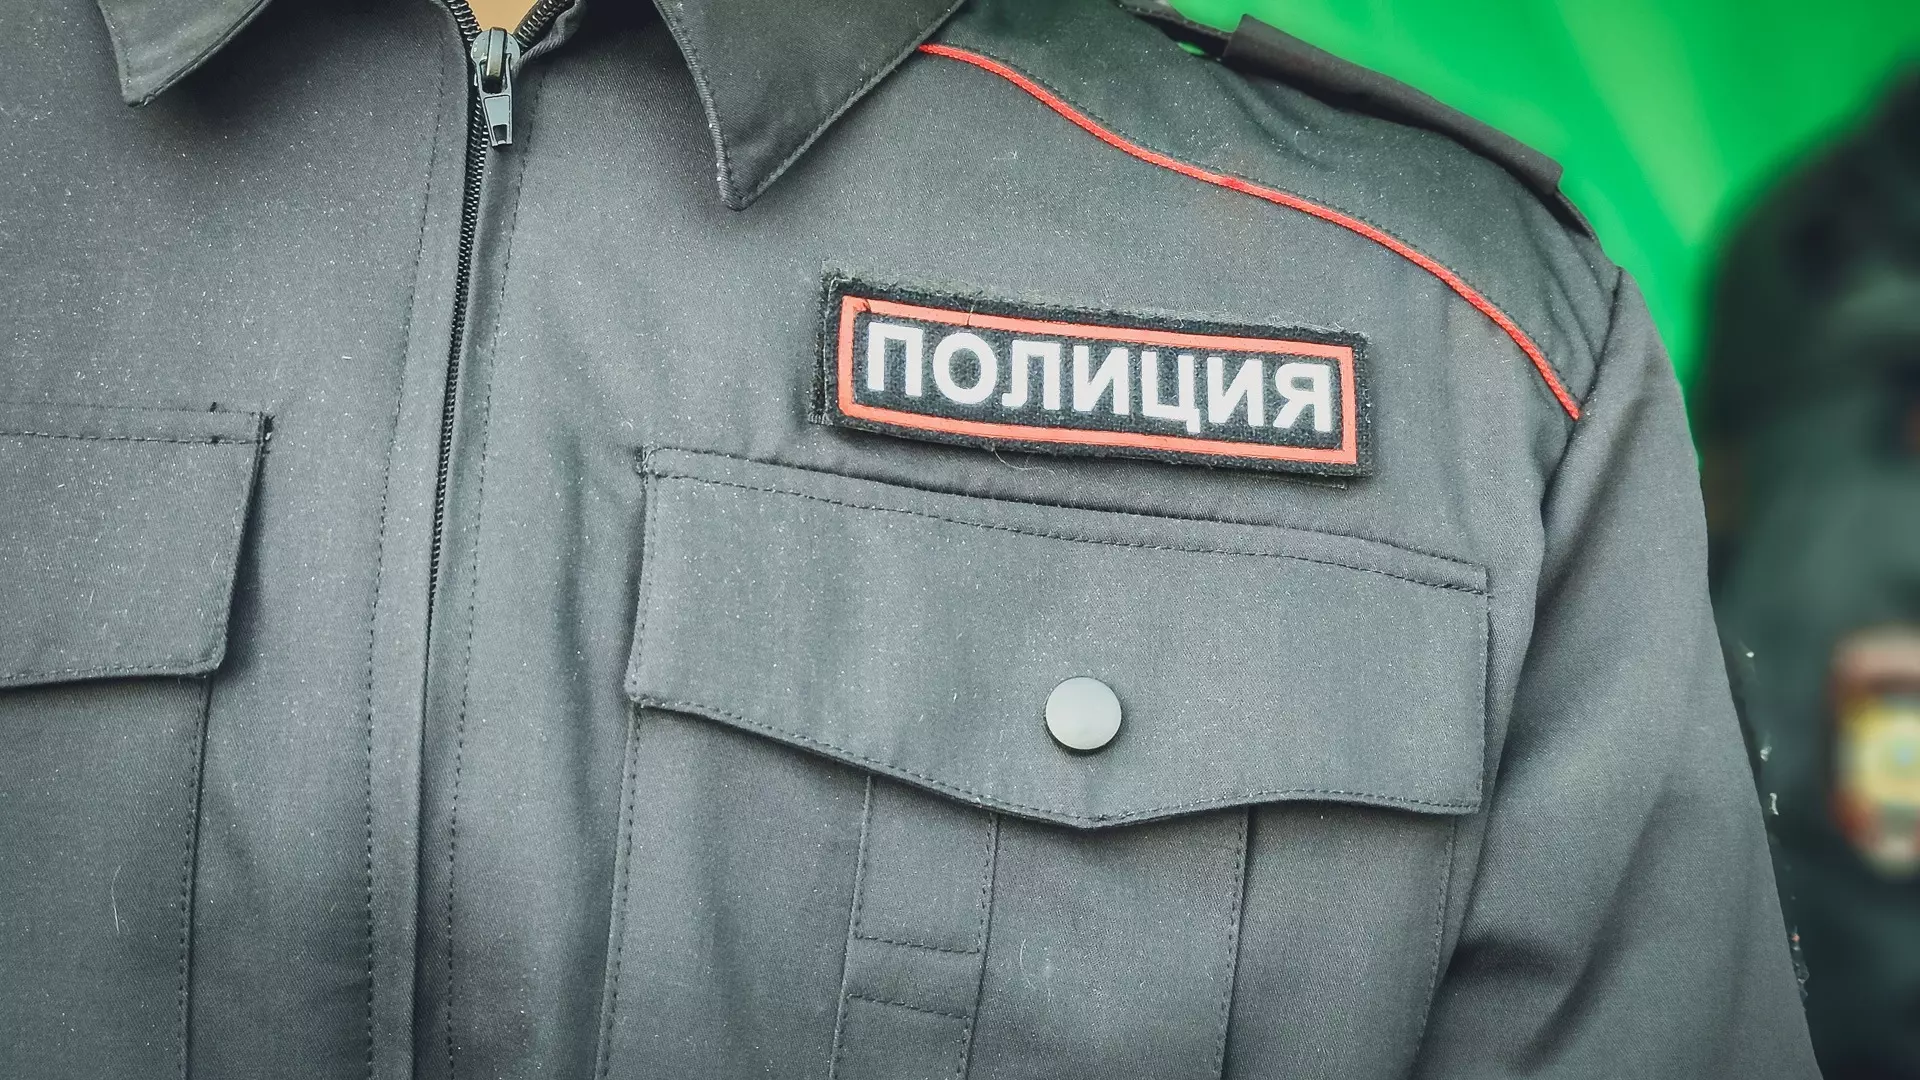 Лже-полицейские угрозами заставили жителя Ростовской области отдать 1 млн руб